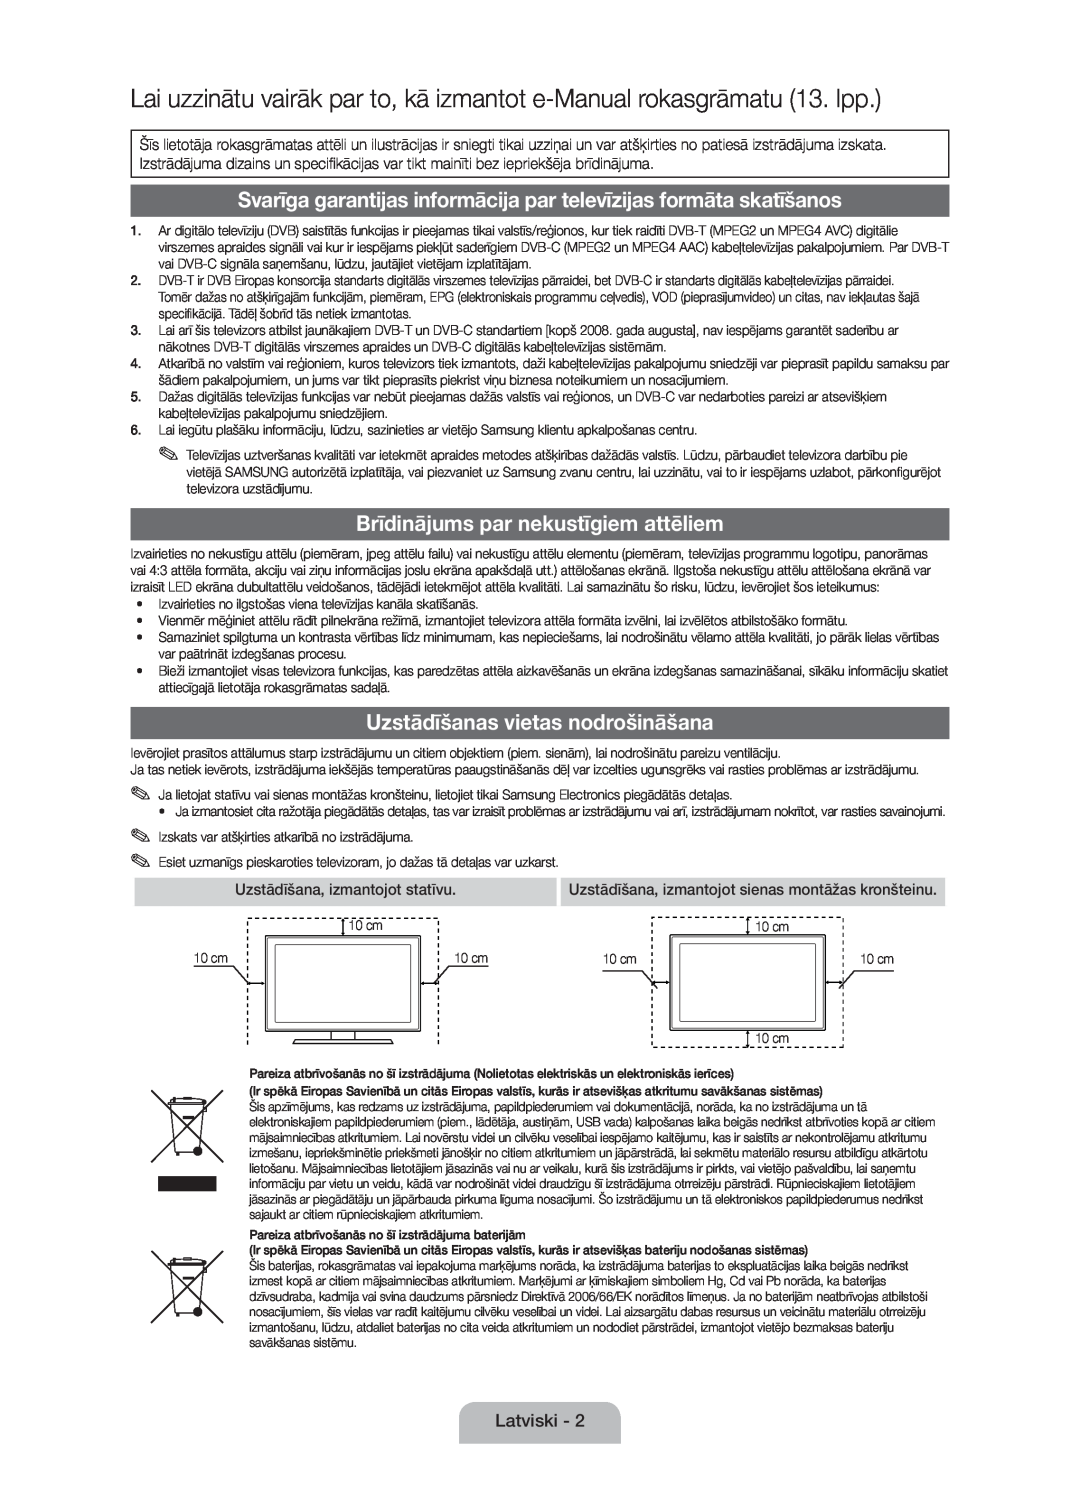 Samsung UE46D5000PWXBT, UE32D5000PWXZG manual Lai uzzinātu vairāk par to, kā izmantot e-Manual rokasgrāmatu 13. lpp 